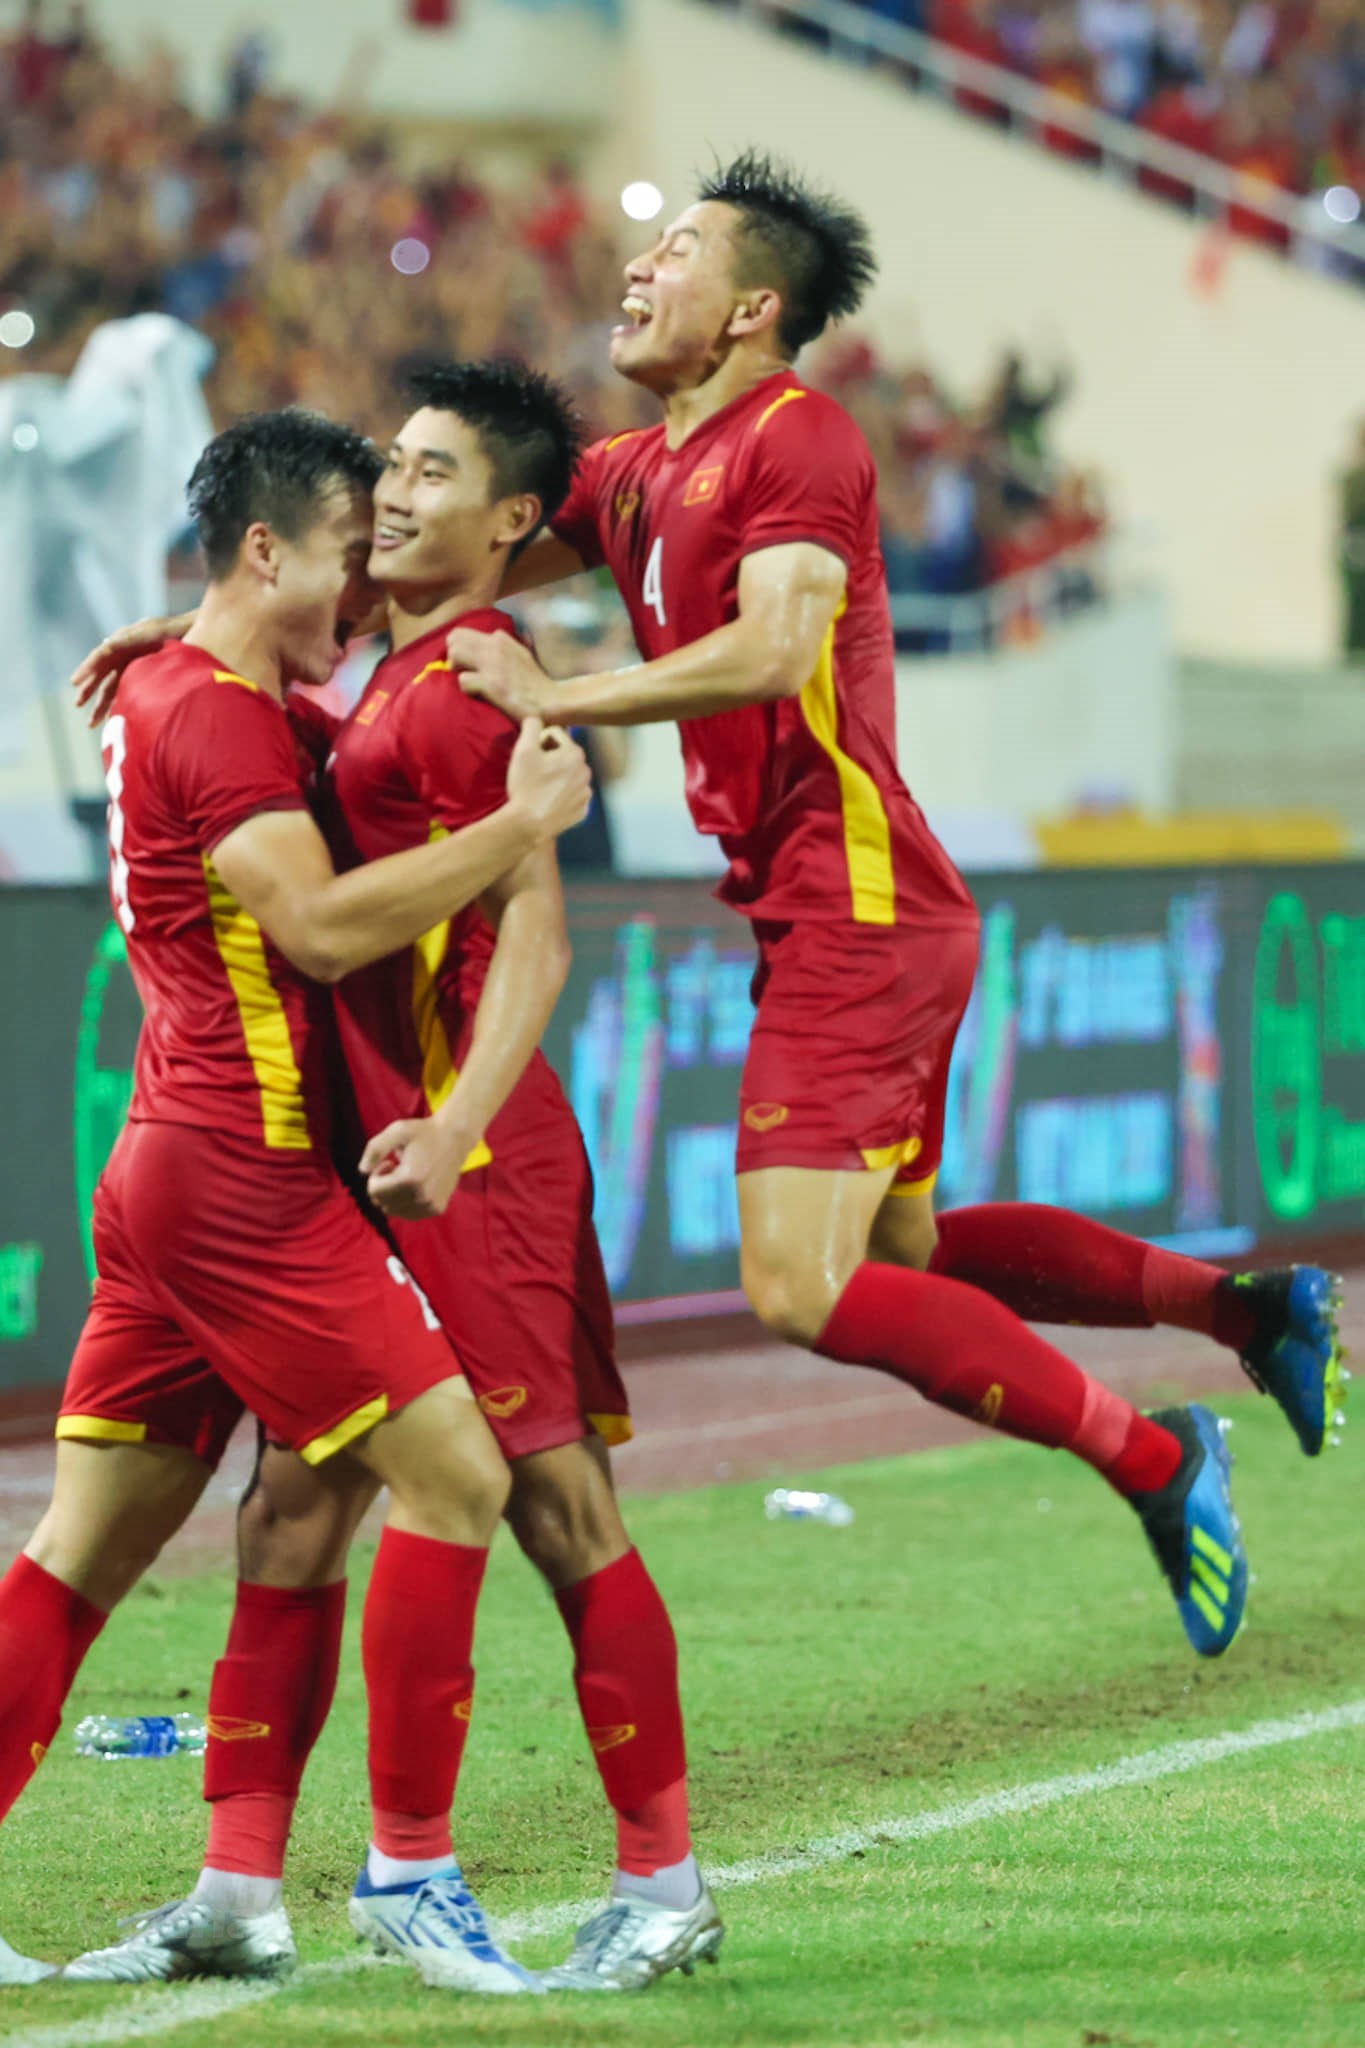 Một công ty game vi phạm bản quyền hình ảnh đội tuyển bóng đá Việt Nam